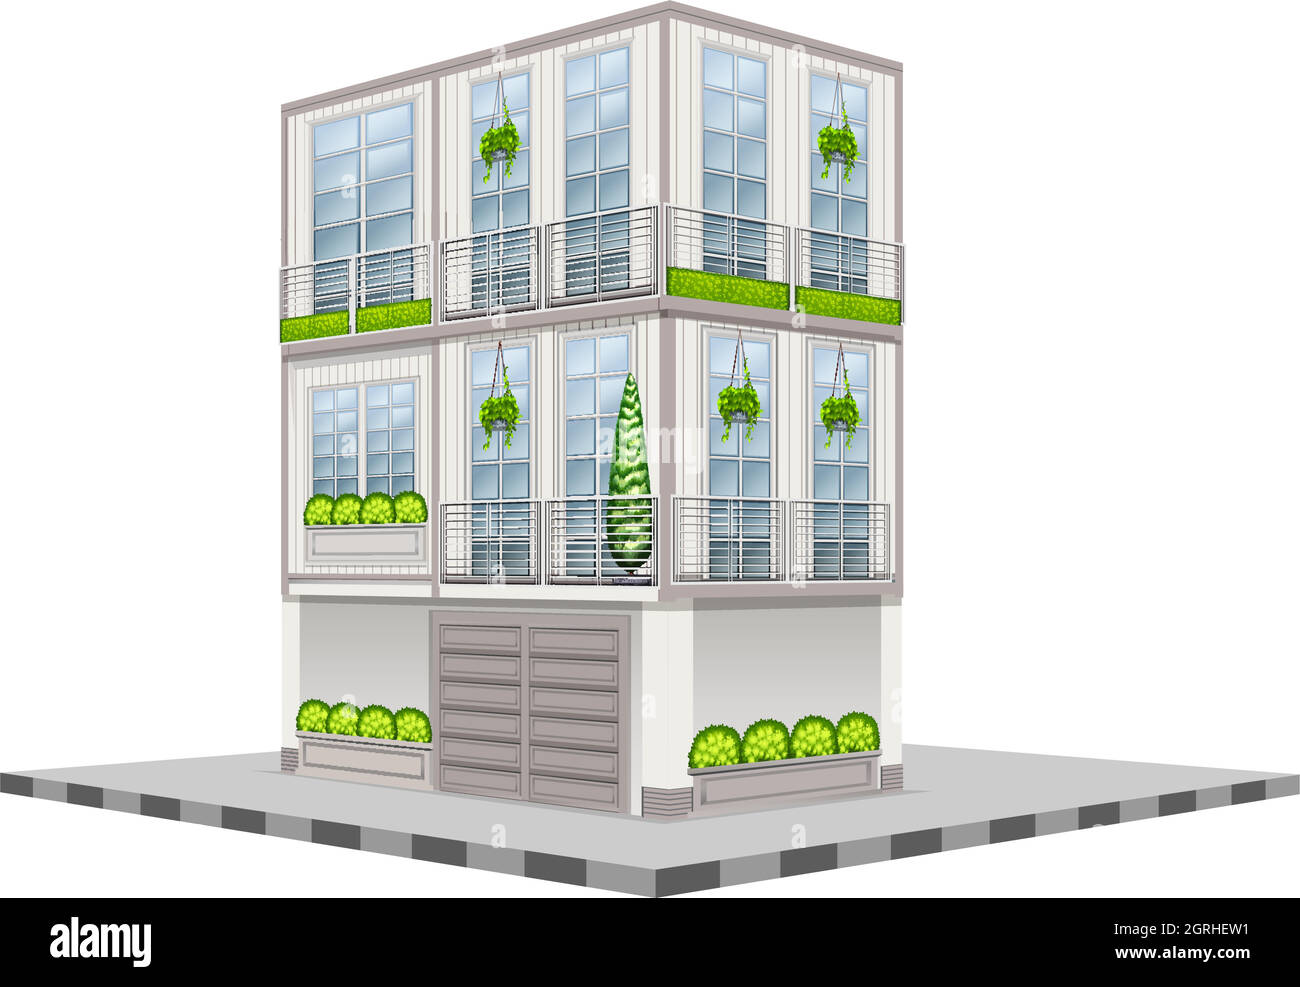 Three storey building in 3D design Stock Vector